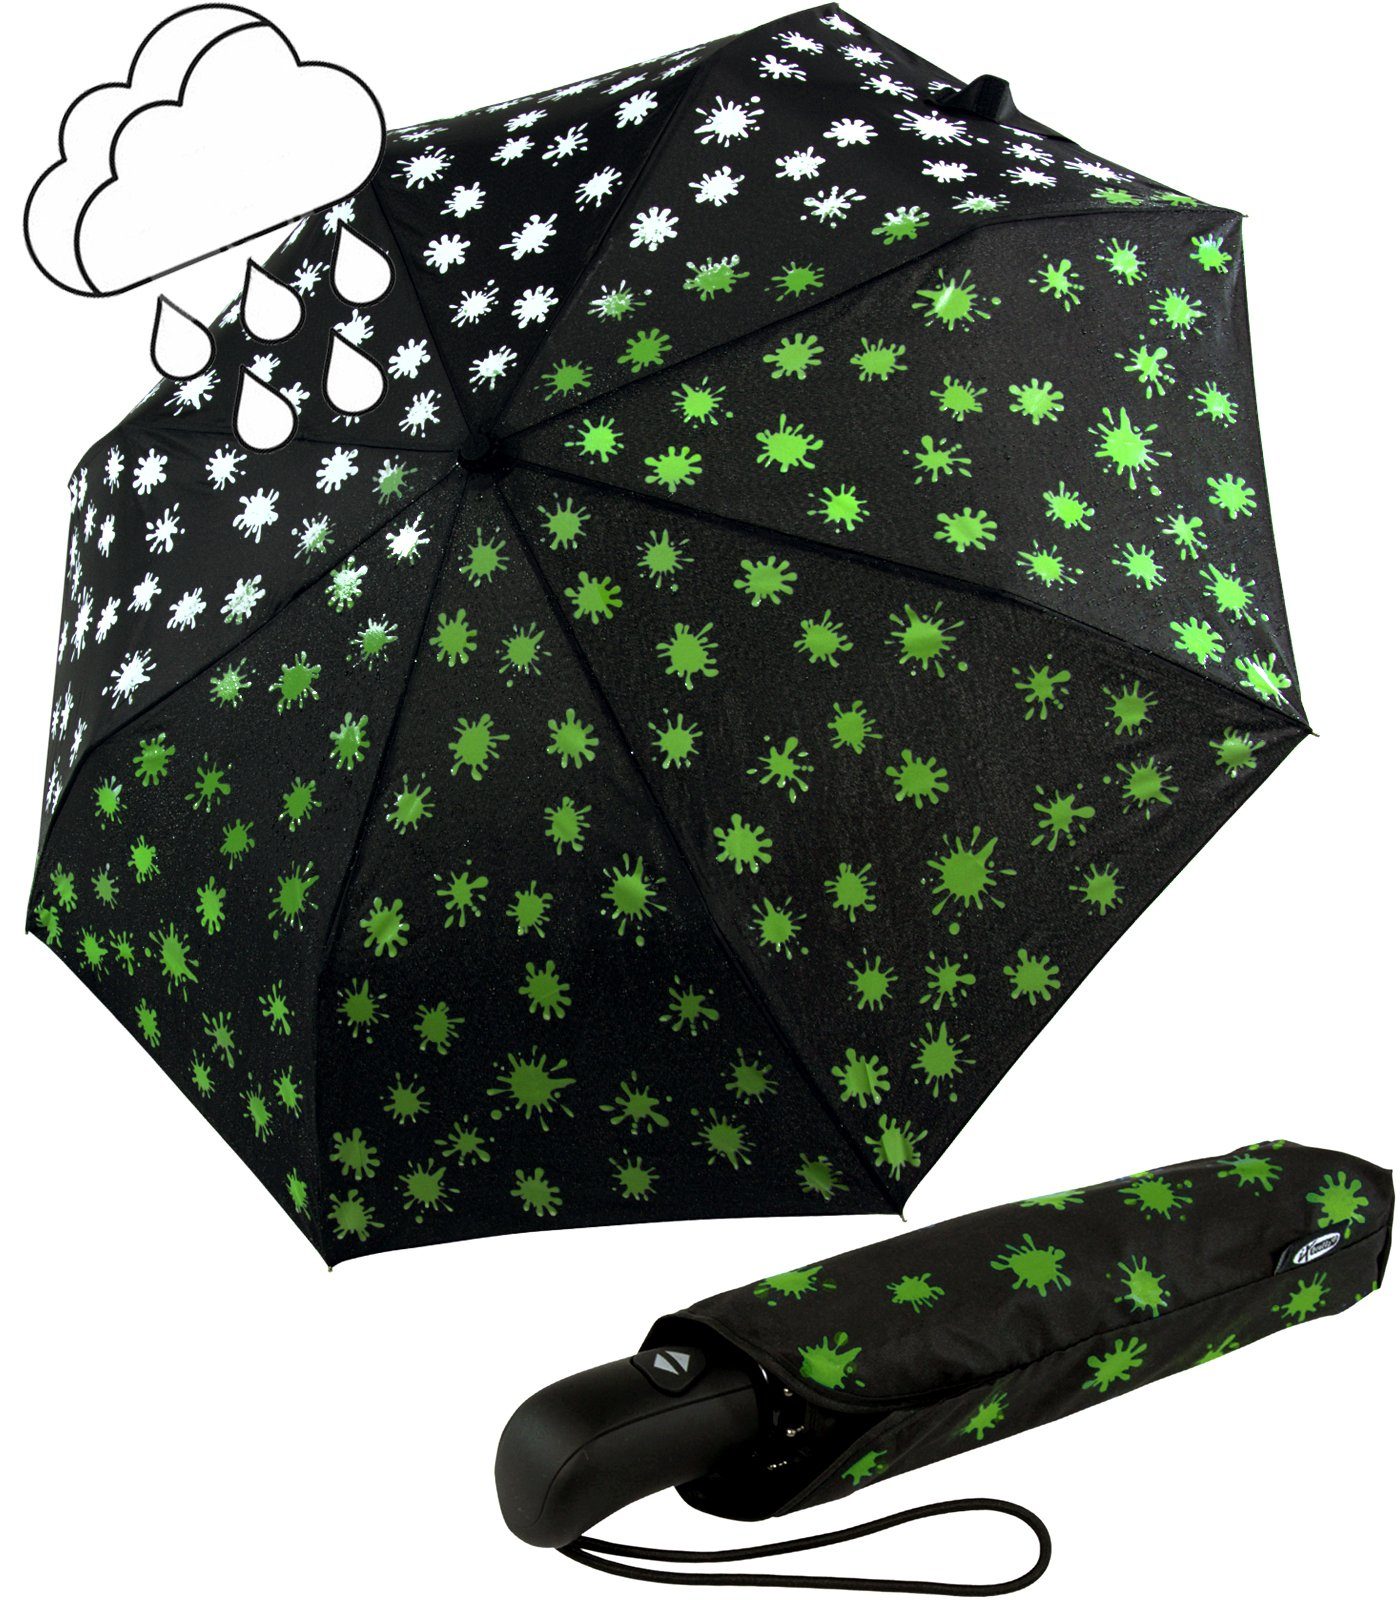 mit Class First Farbkleckse neon-grün - Nässe iX-brella Etui bei Taschenregenschirm sturmfest, Farbänderung - Automatikschirm